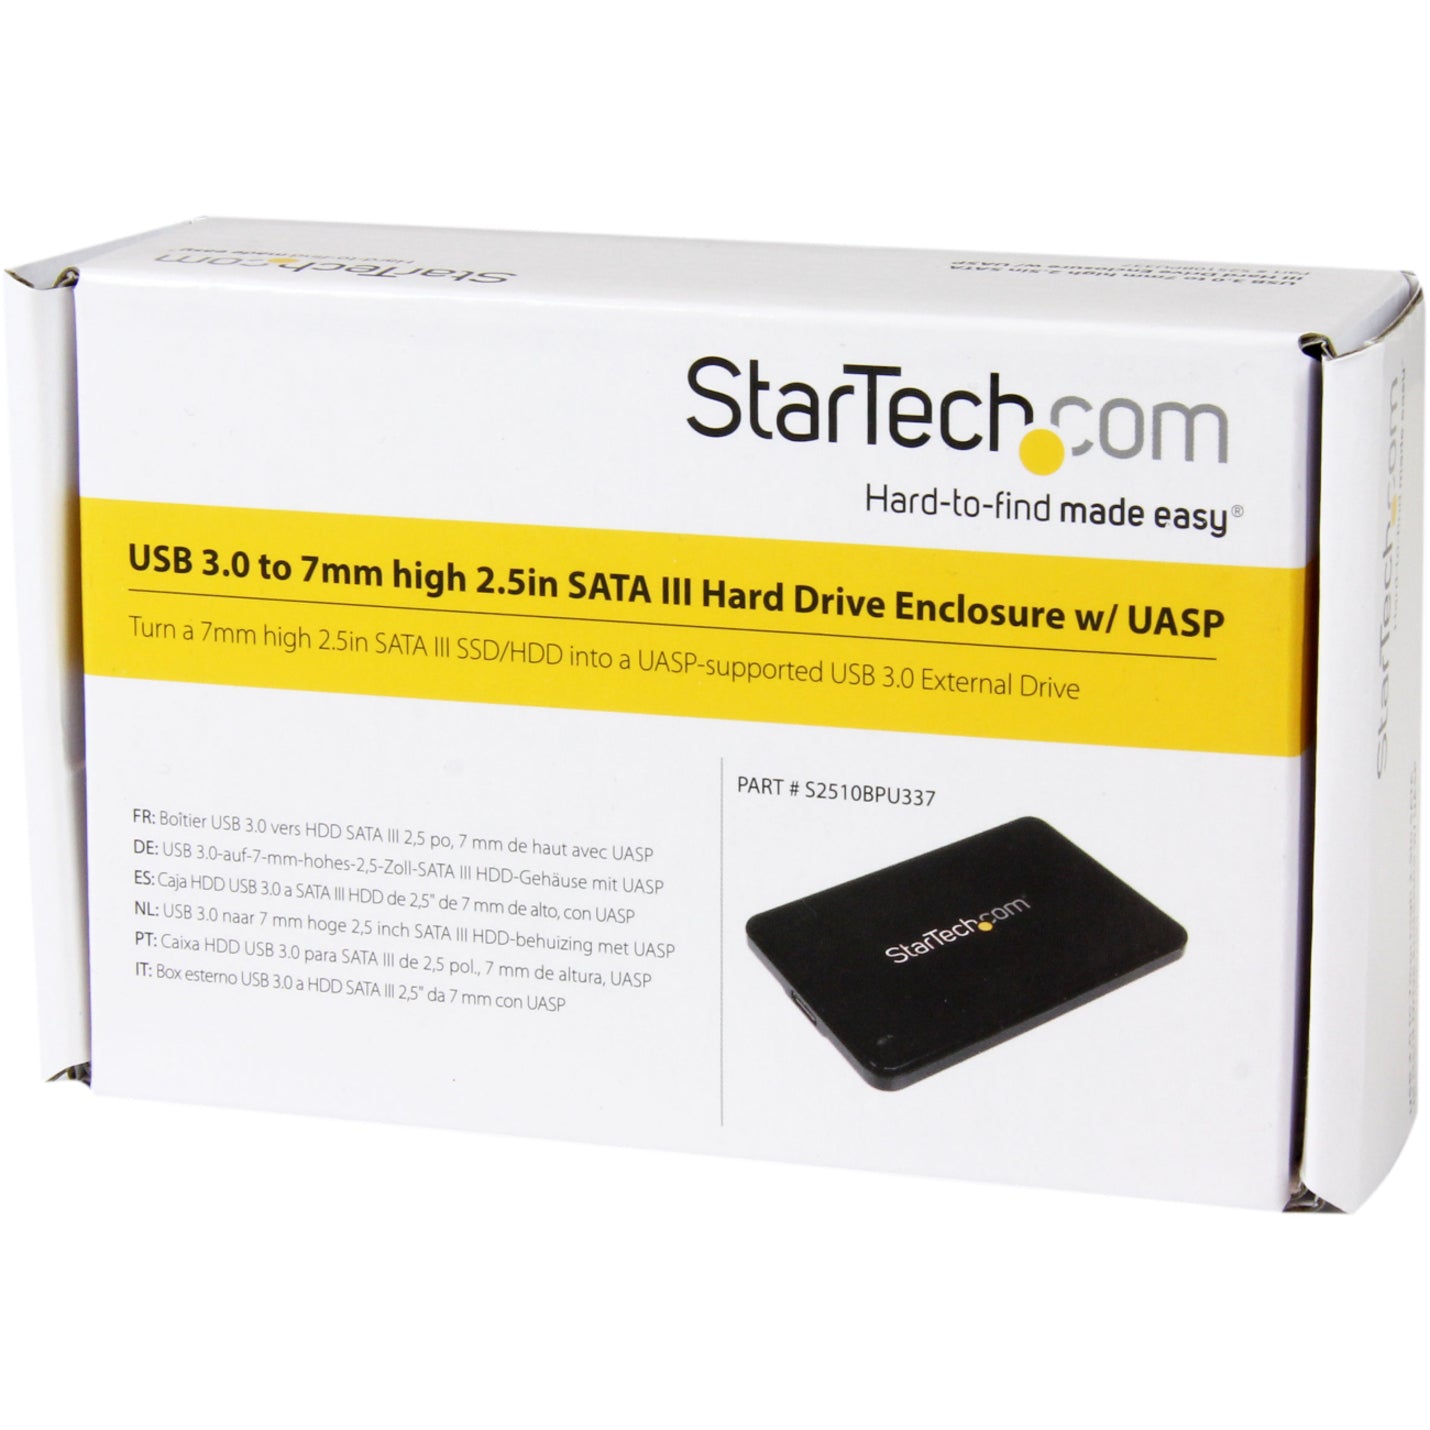 سريع بيانات شحن شركة StarTech.com ثلاثي الأبعاد صلب واجهة USB 3.0 الحالة الصلبة نقل نحيف ثلاثة وعشرون ثانية HDD SSD ساتا S2510BPU337 SATA 7mm تشفيرroker.